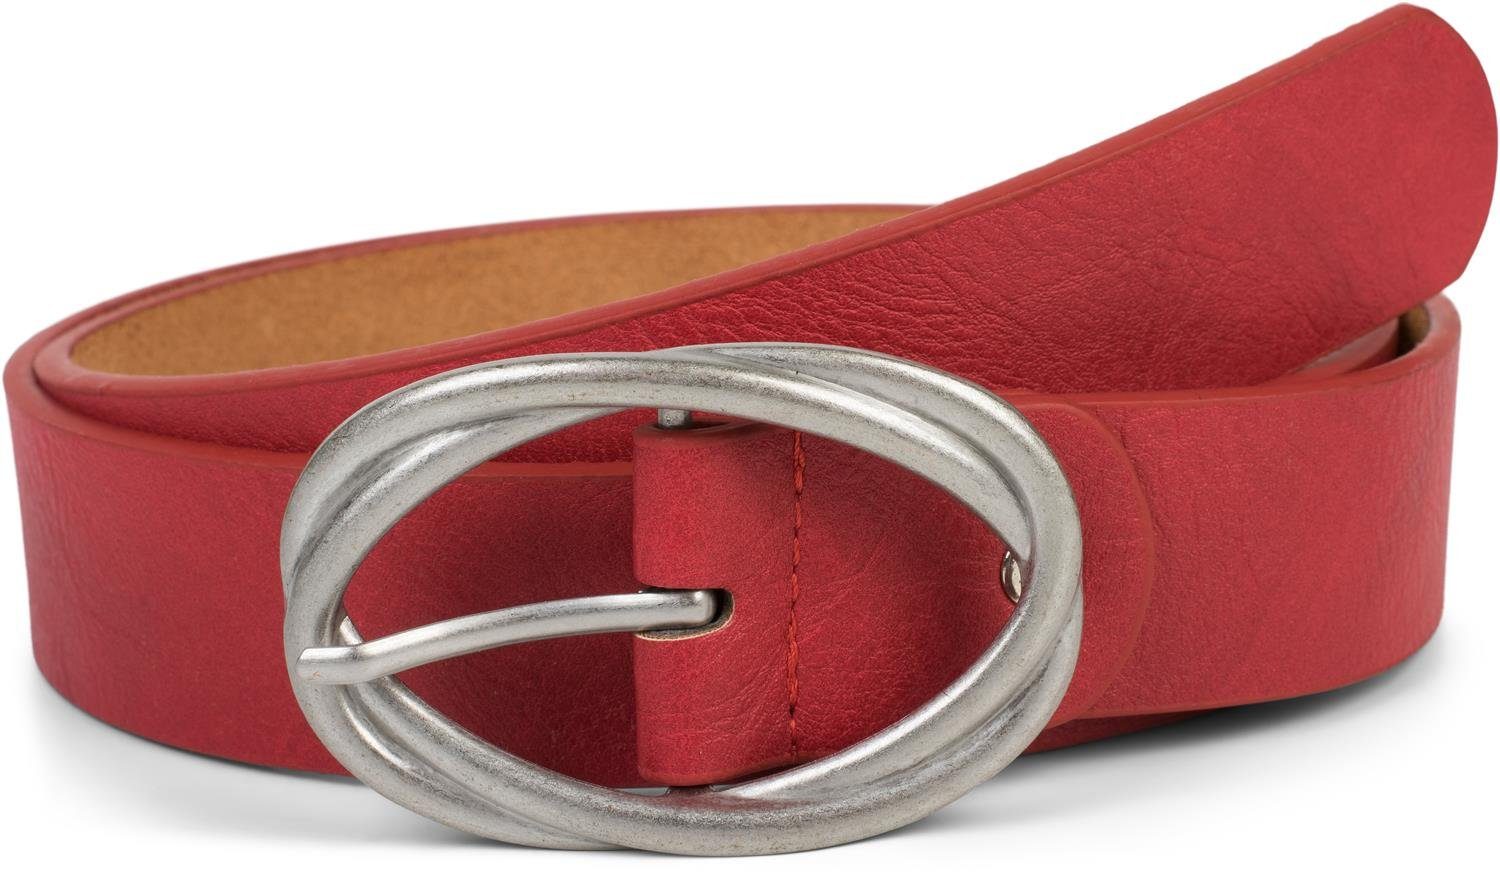 styleBREAKER Synthetikgürtel Gürtel unifarben mit verschlungener Doppelschnalle Rot-Silber